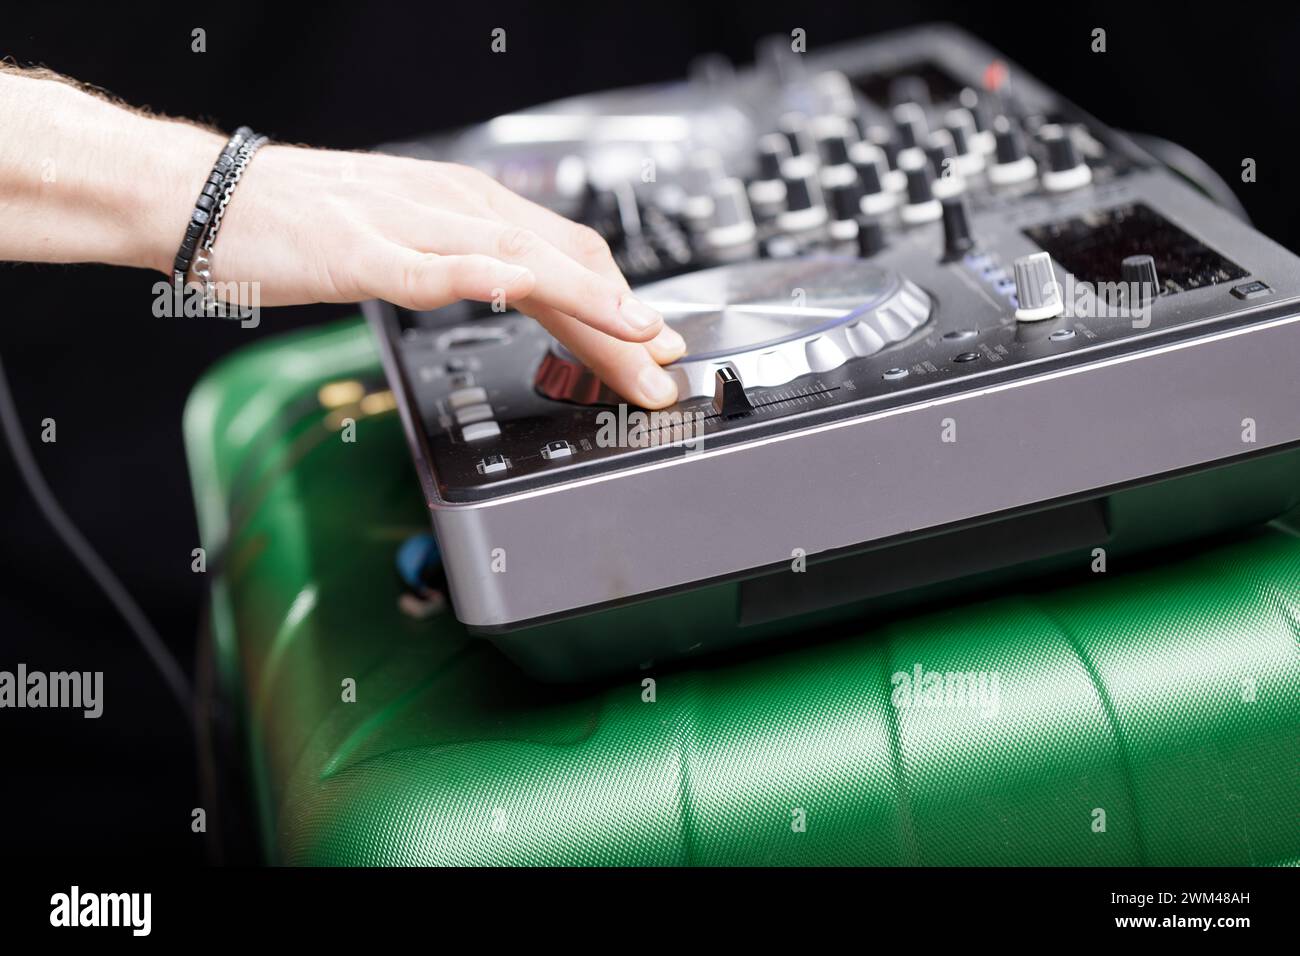 Le impostazioni del mixer vengono regolate da un DJ, per mostrare il dietro le quinte della creazione musicale Foto Stock